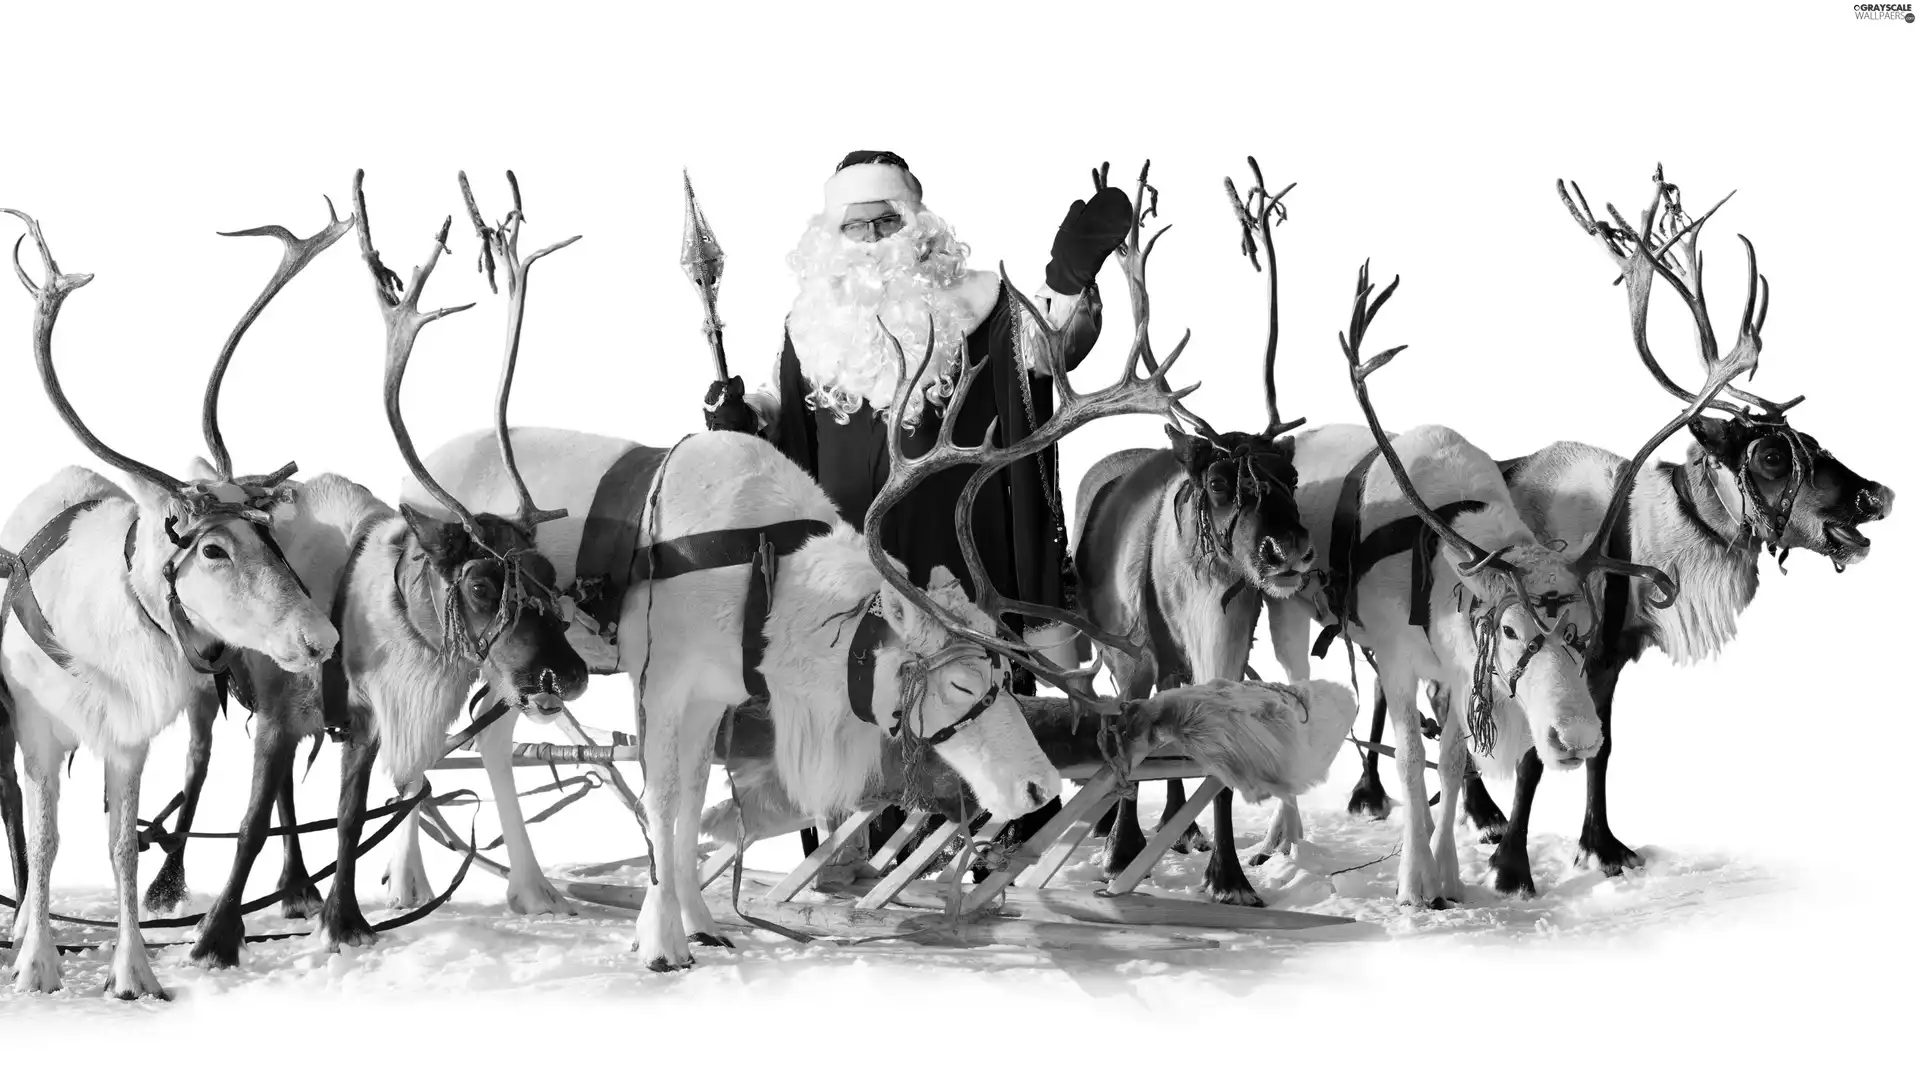 sleigh, Santa, reindeer